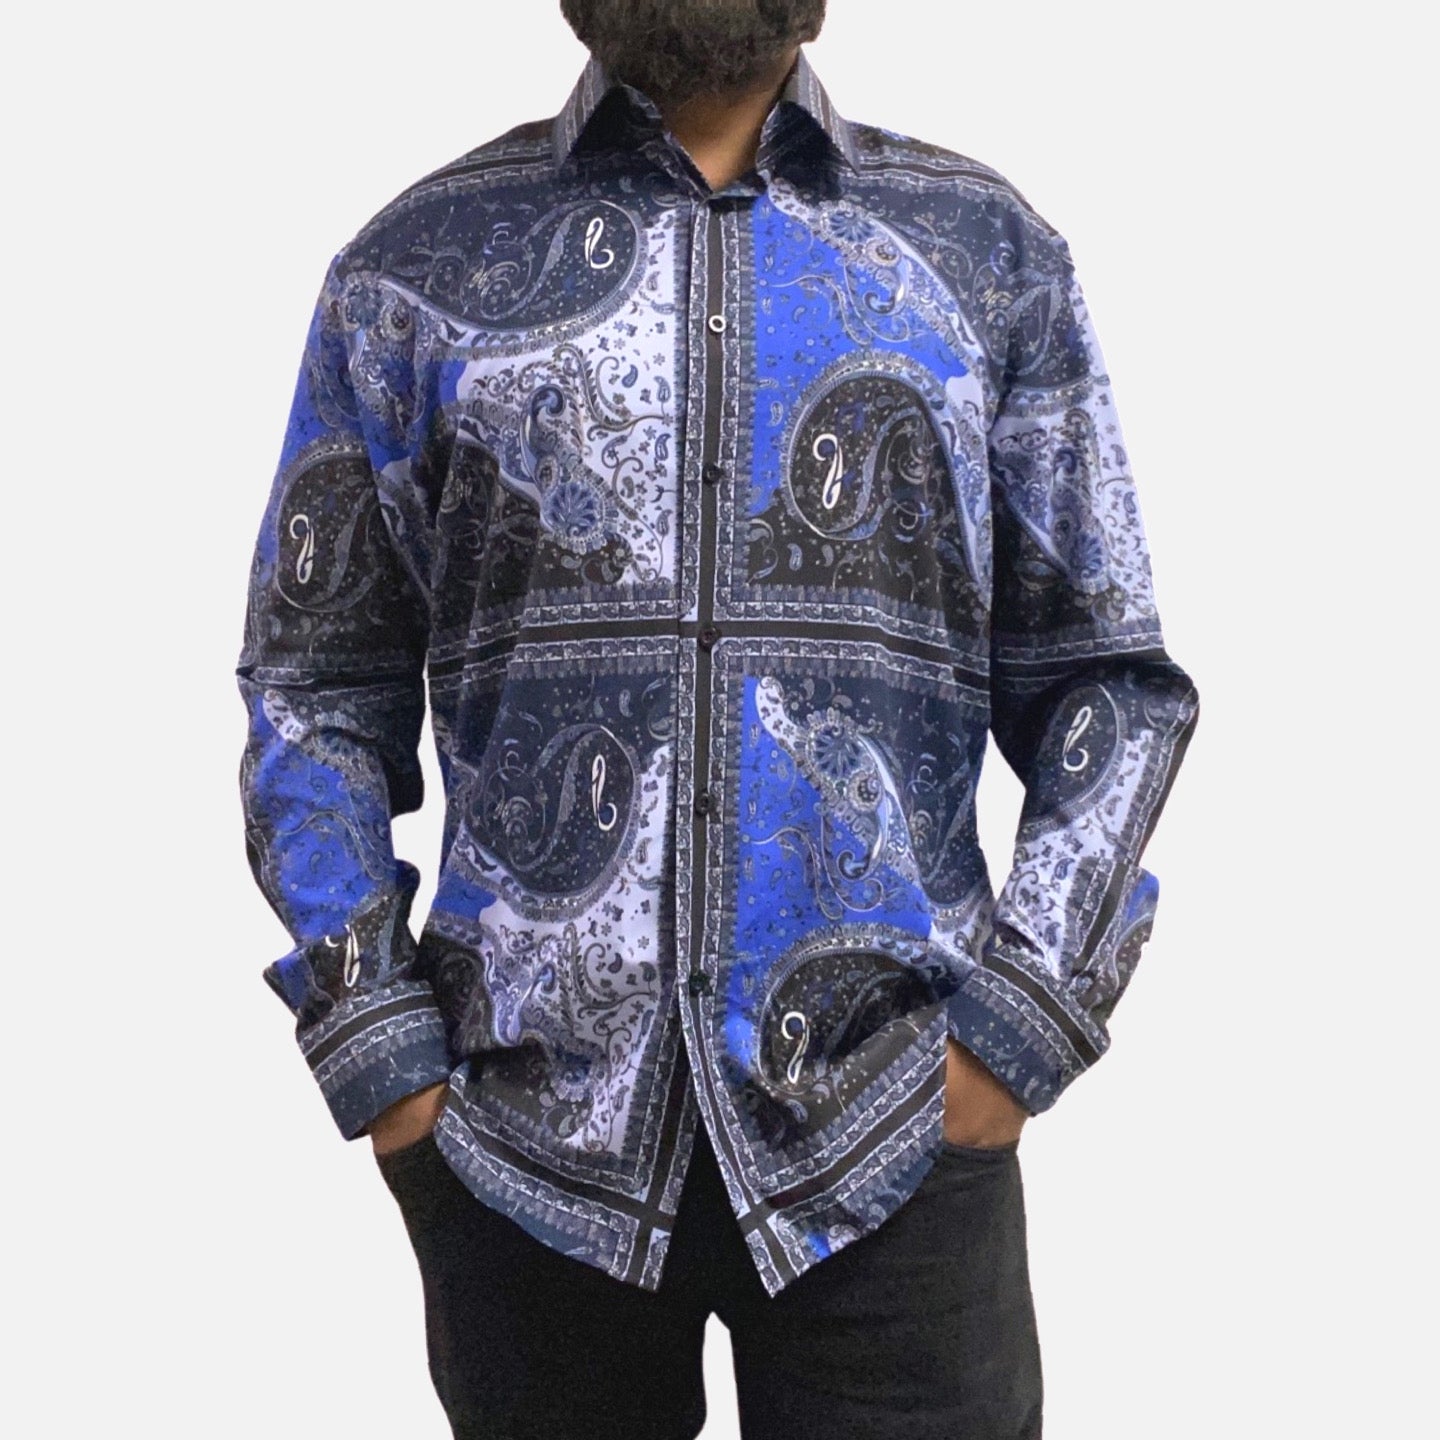 Blue paisley pattern fashions shirt